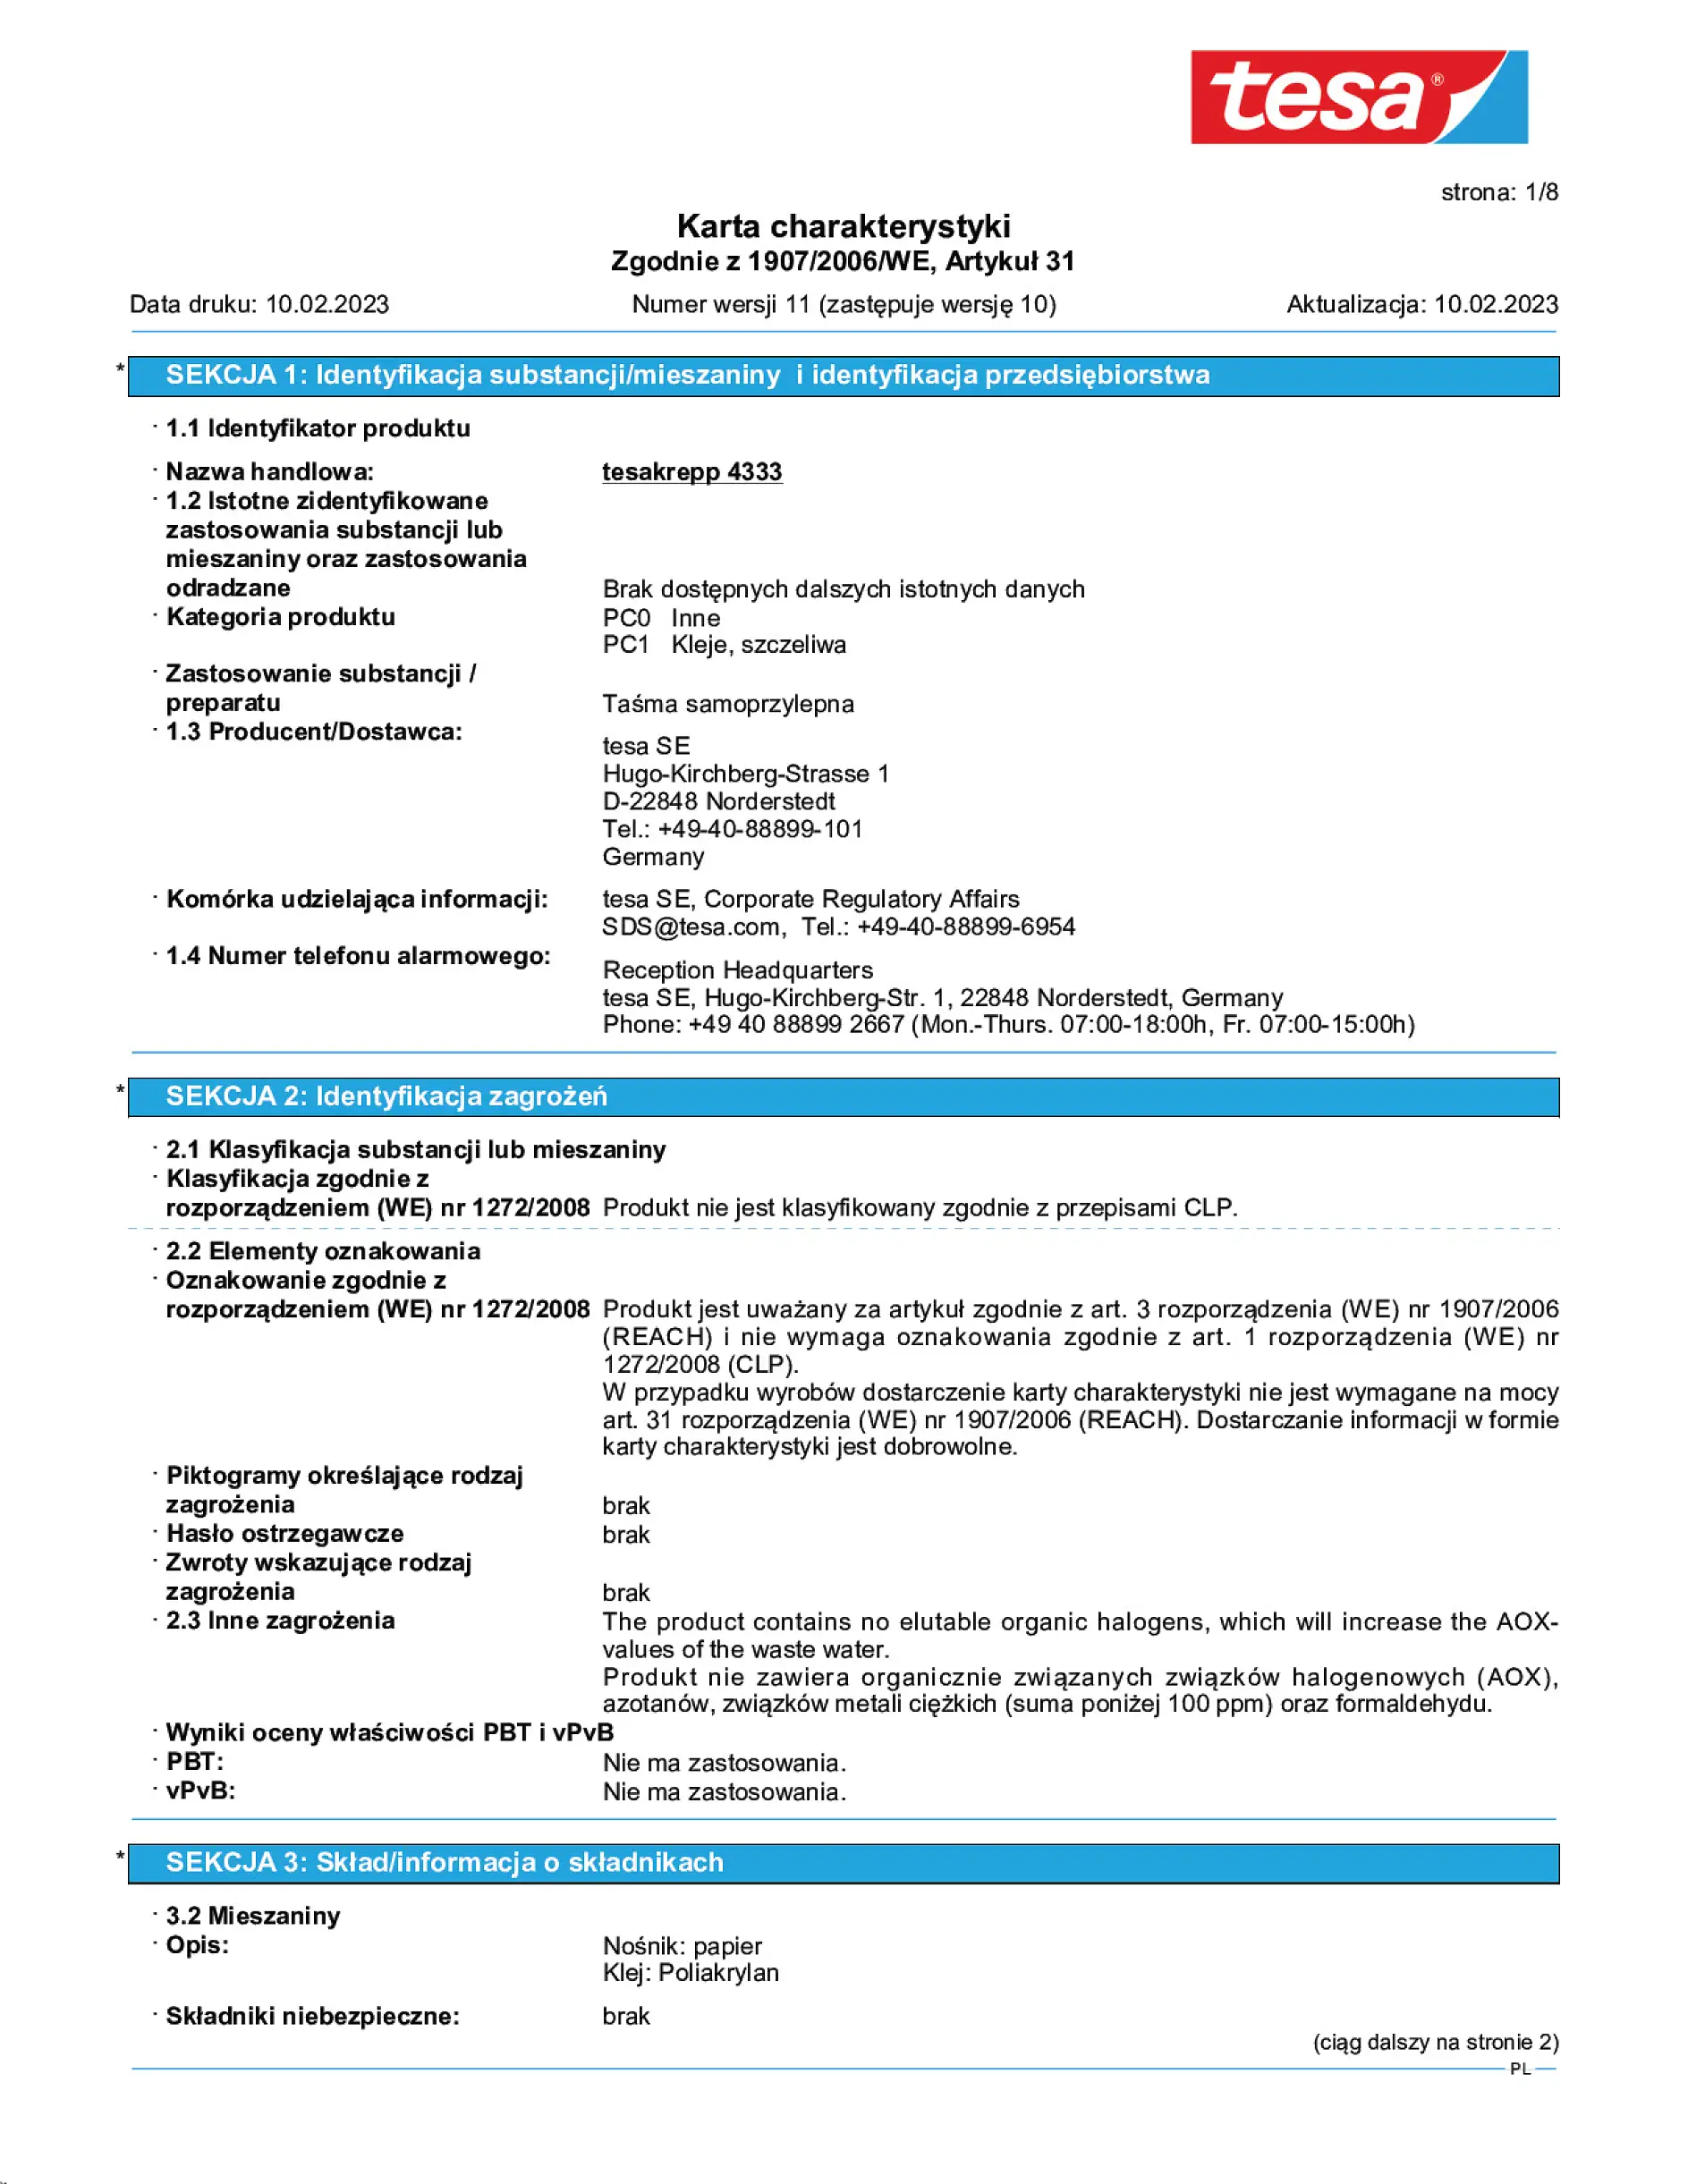 Safety data sheet_tesa® 04333_pl-PL_v11